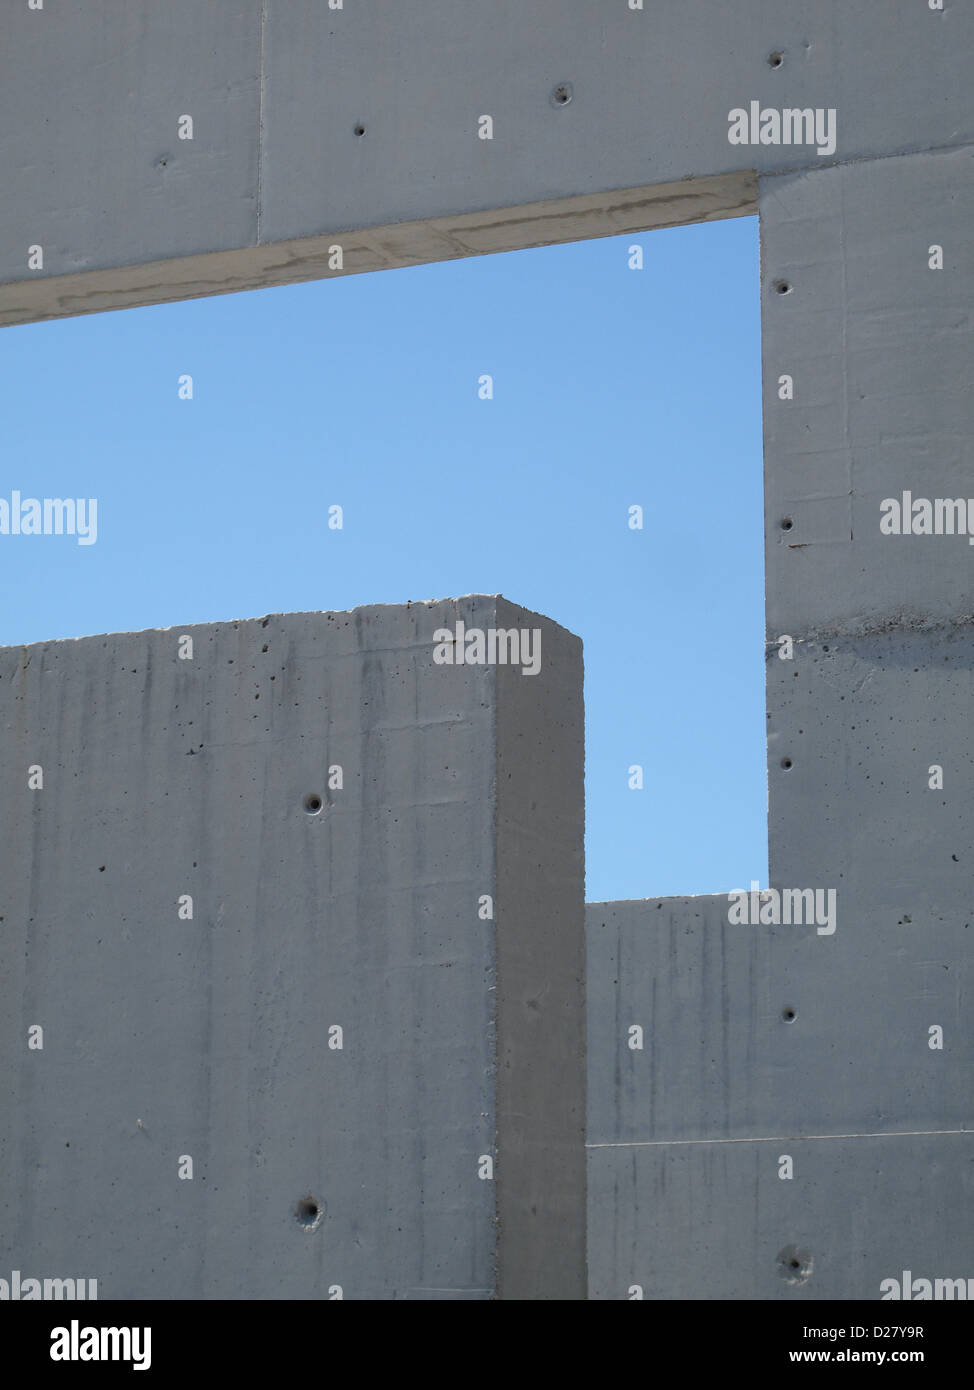 abstrakte Form länglichen Rechteck blauer Himmel Beton Stein Fenster Stockfoto